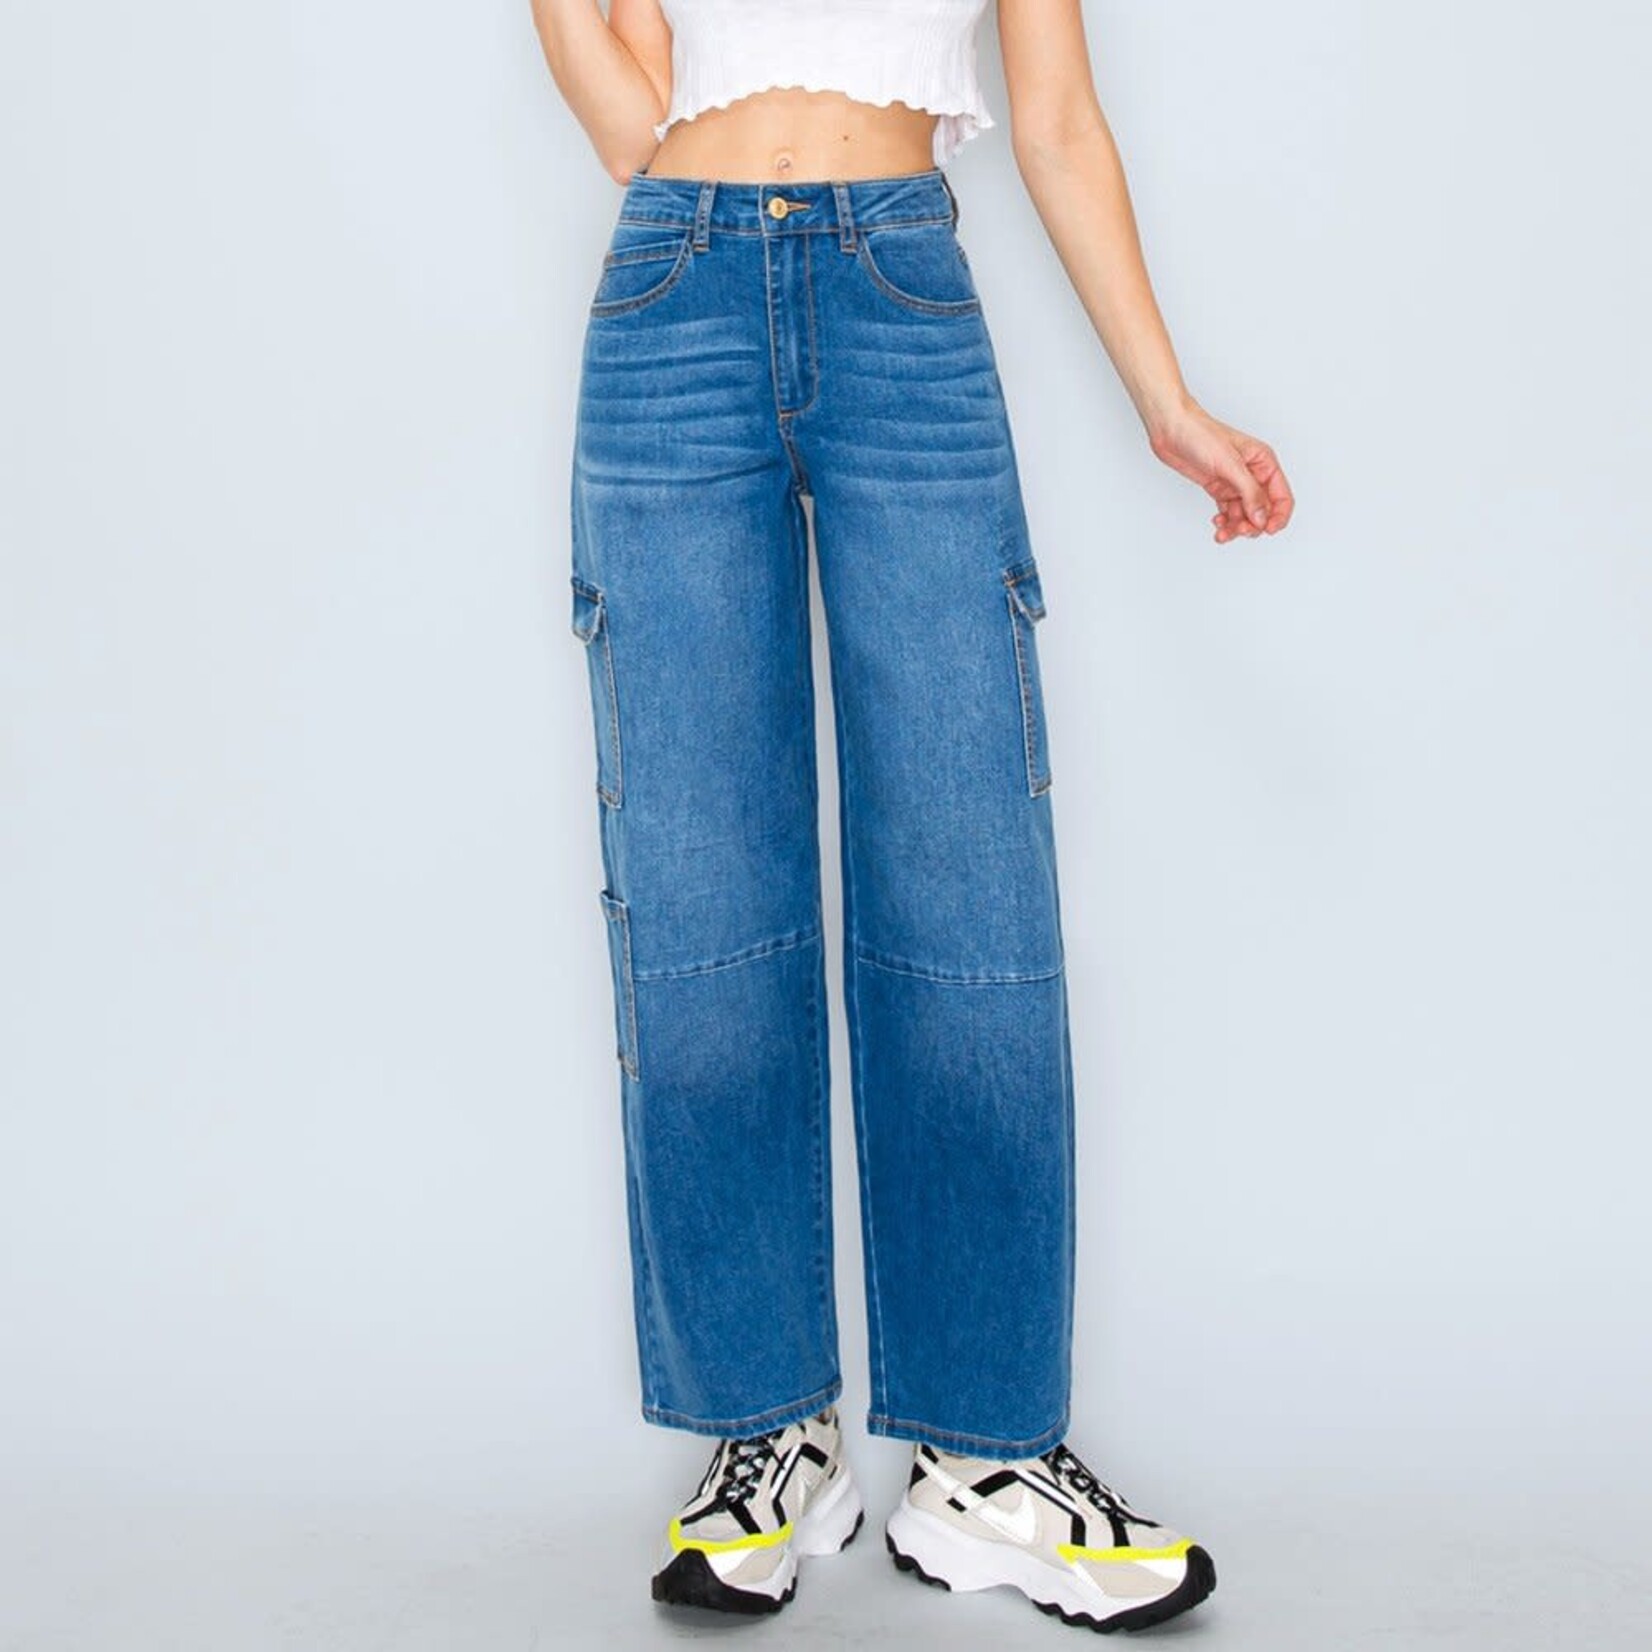 Wax Jeans Wax Jean - Women's Cargot Pocket Jean with Knee Cutline - 90336